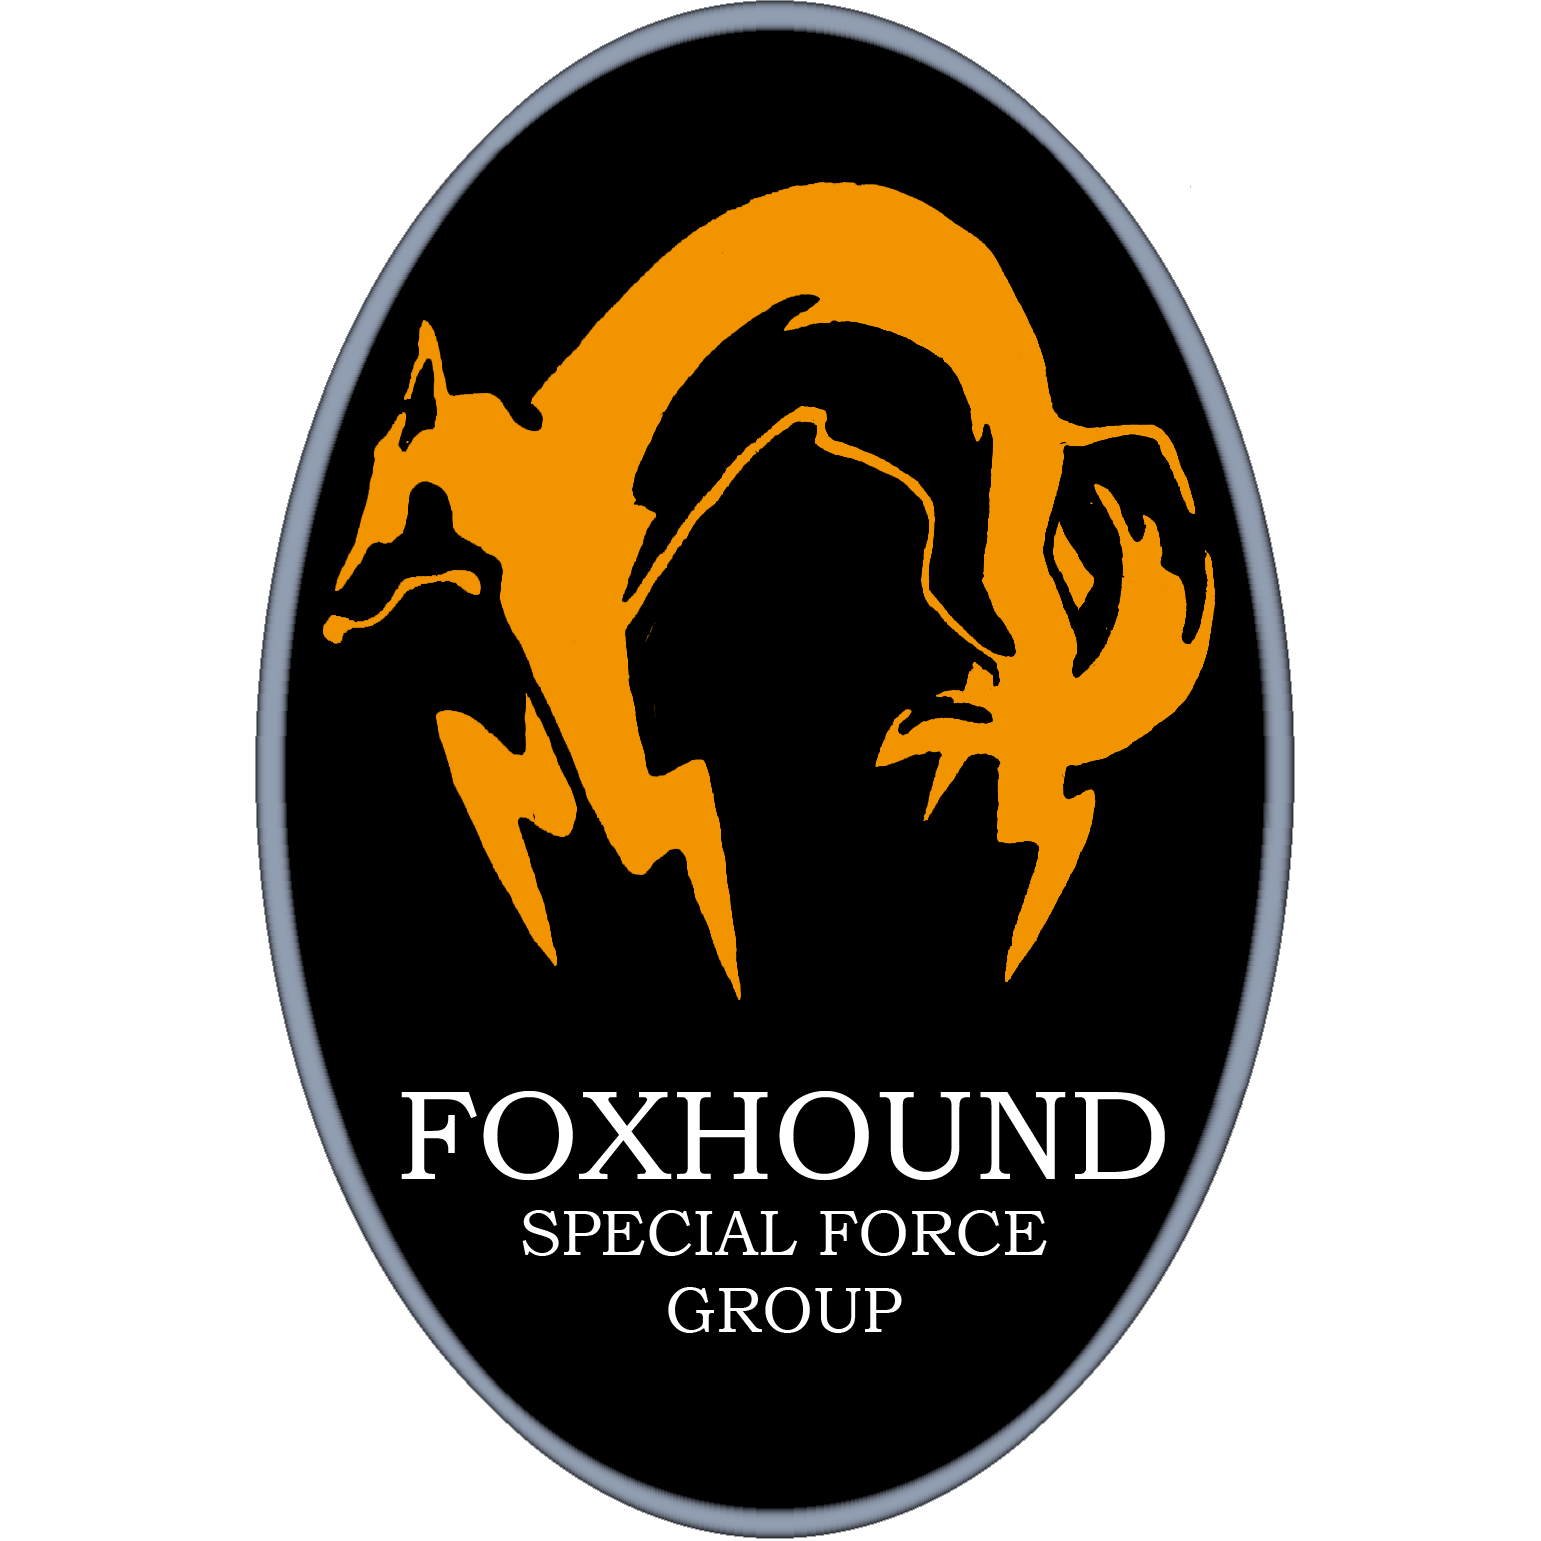 Fox hound. Foxhound. Отряд фоксхаунд. Фоксхаунд MGS. Эмблема фоксхаунд.